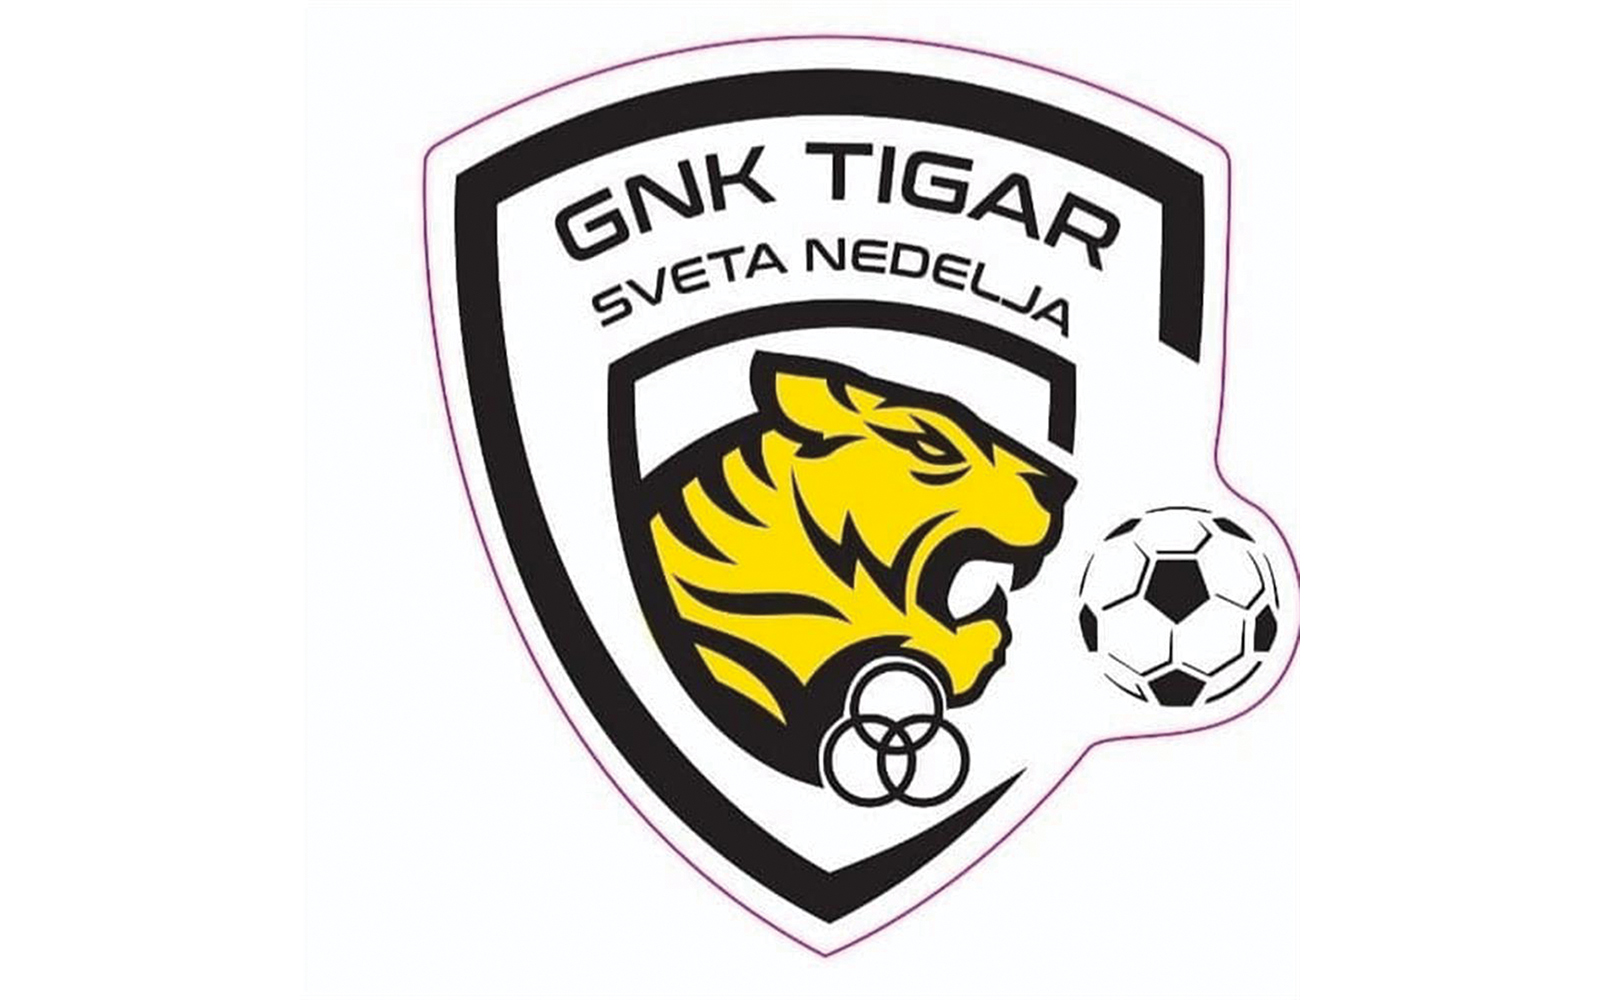 4. NL sredite Zagreb  B - 16. kolo
Tigar Sveta Nedelja  Mraclin 1:0 (0:0)